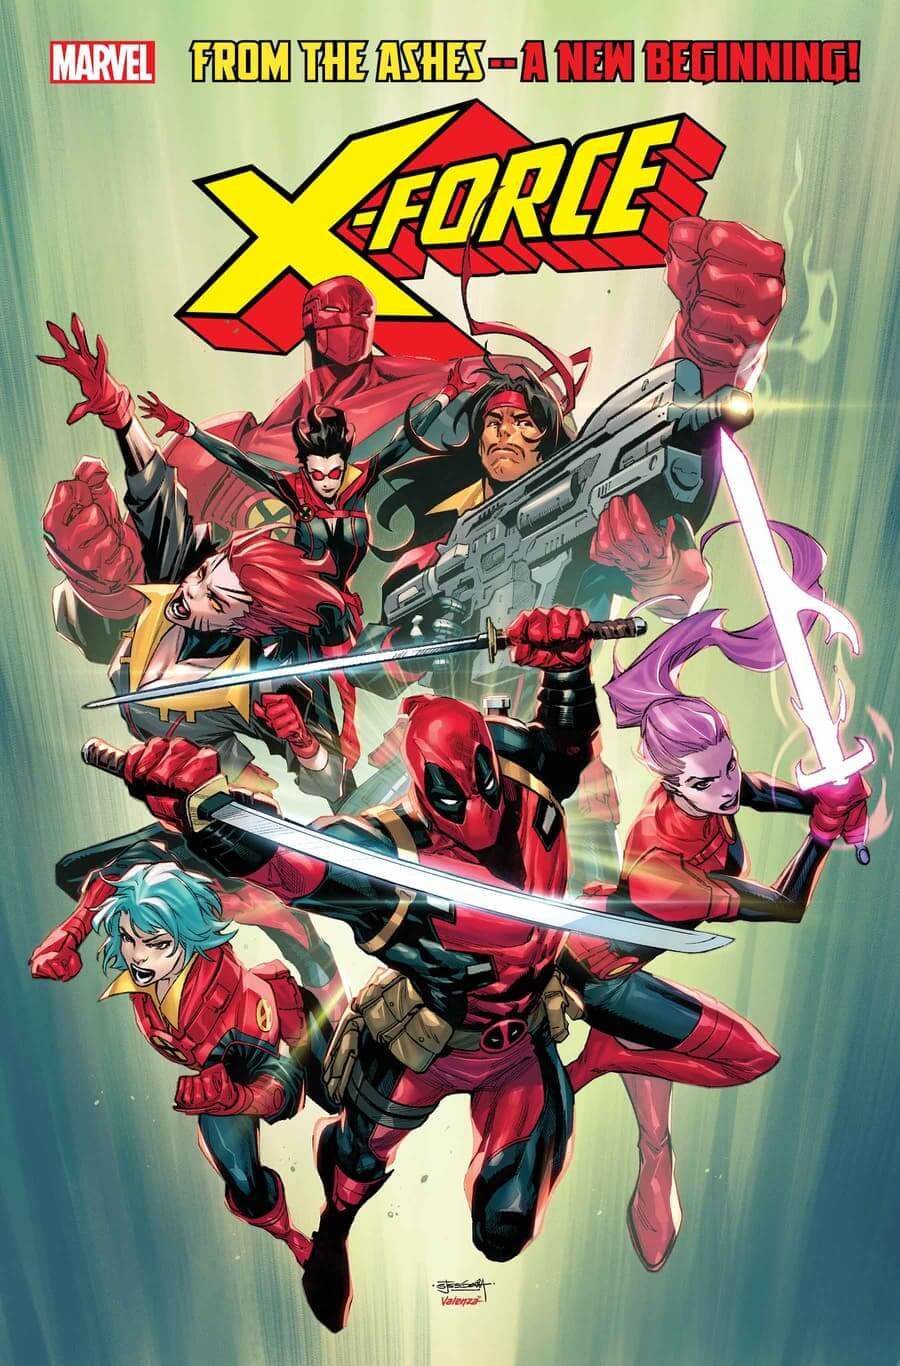 Cover di X-Force 1 di Stephen Segovia